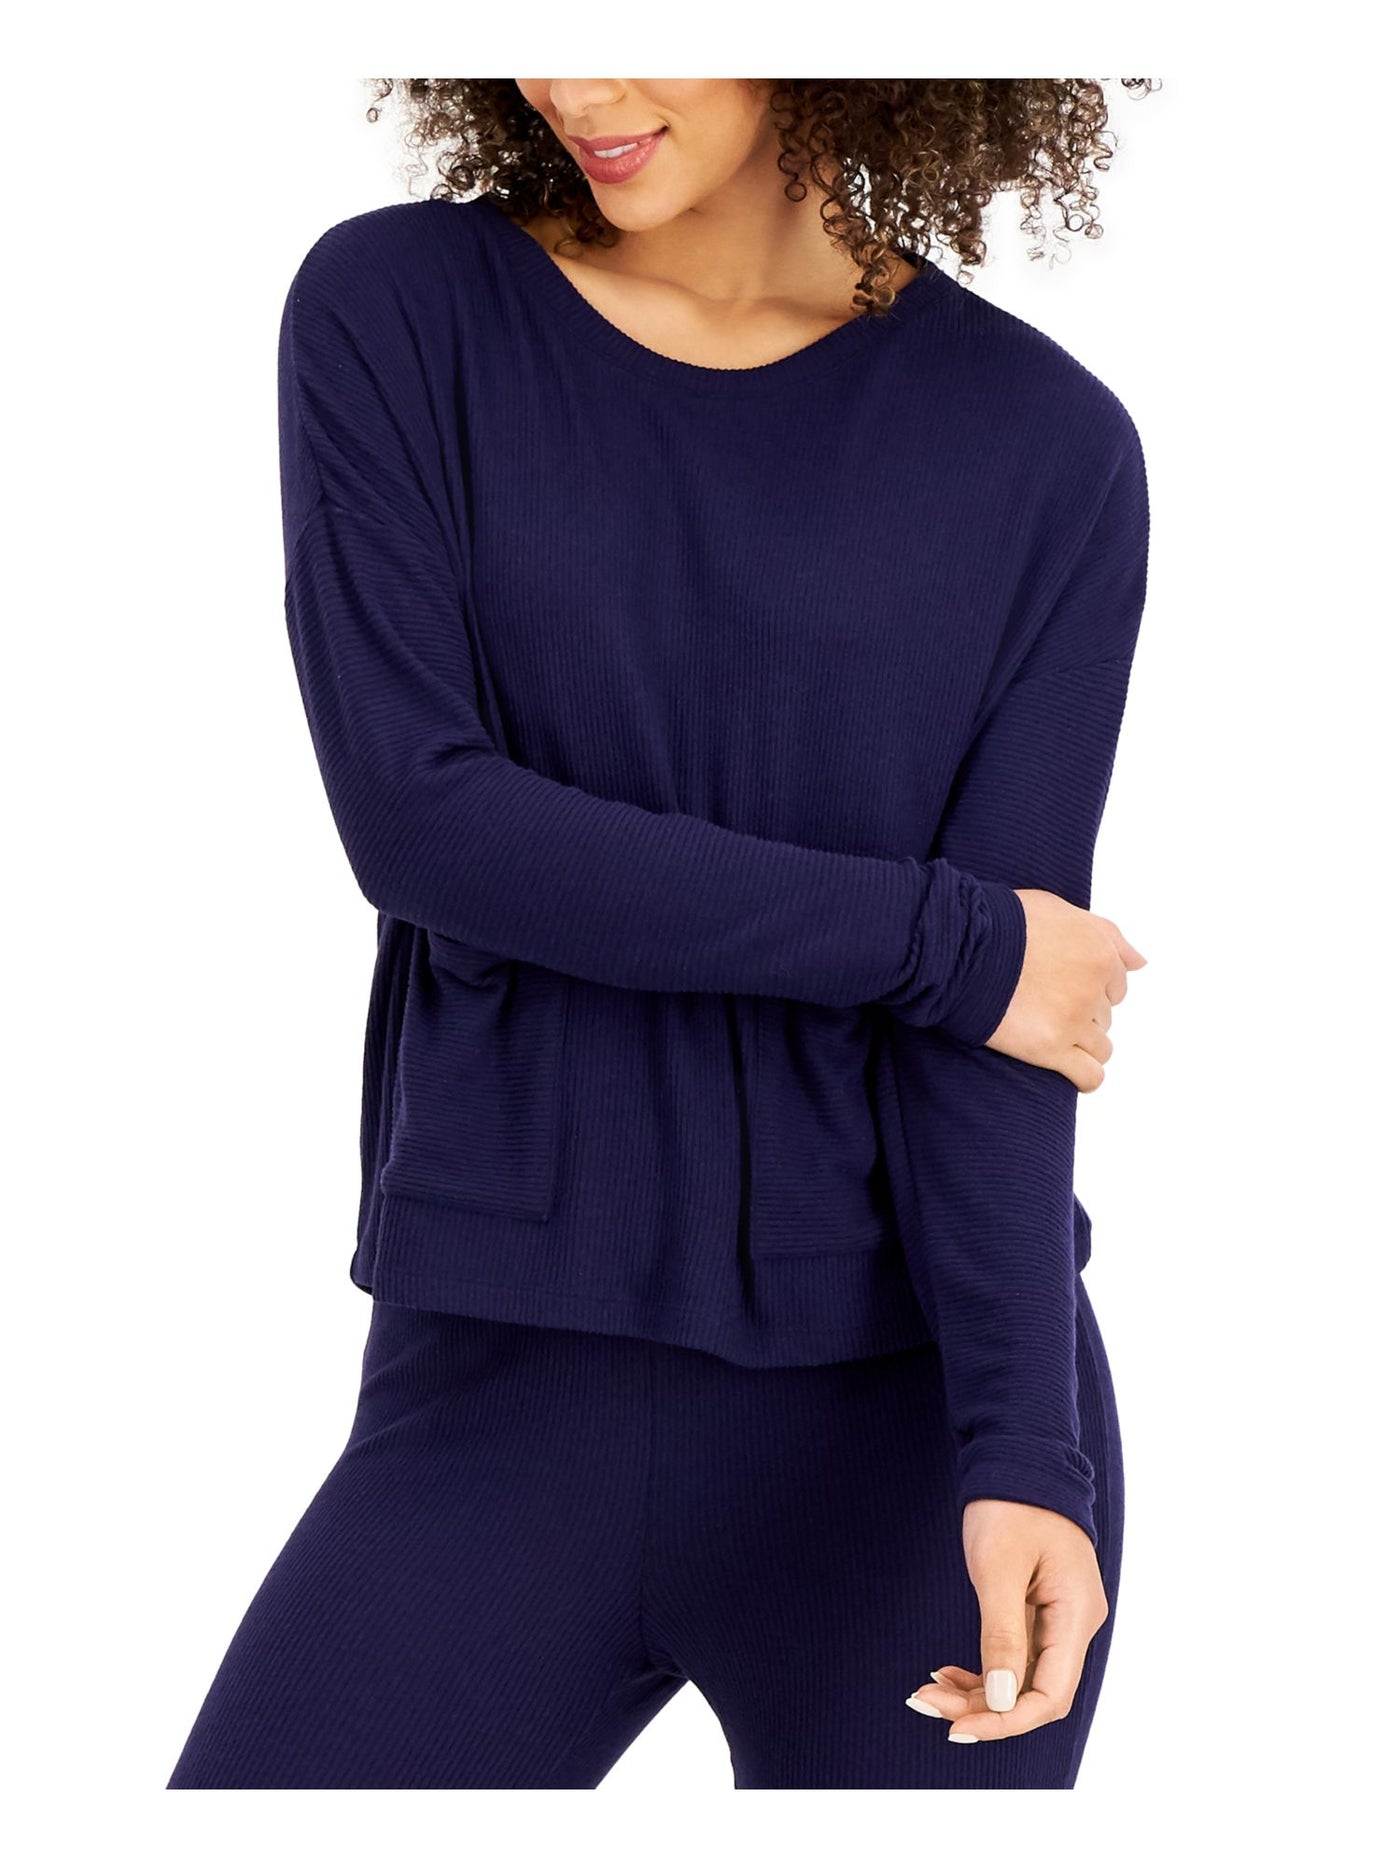 ALFANI Intimates Blue Pullover Long Sleeves Front Pockets Sleep Shirt Pajama Top XS